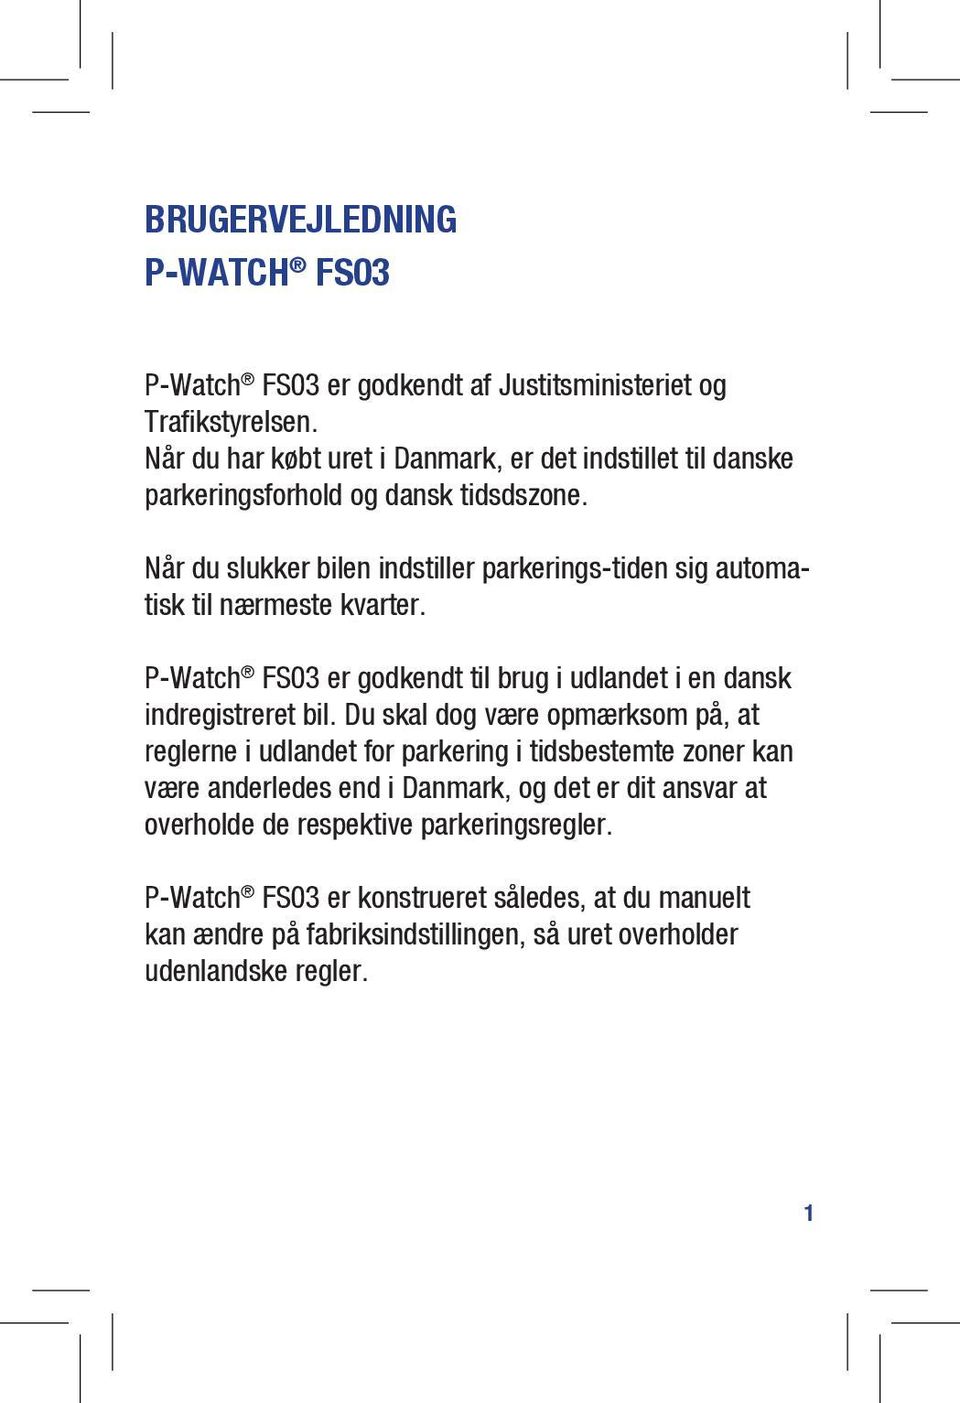 Når du slukker bilen indstiller parkerings-tiden sig automatisk til nærmeste kvarter. P-Watch FS03 er godkendt til brug i udlandet i en dansk indregistreret bil.